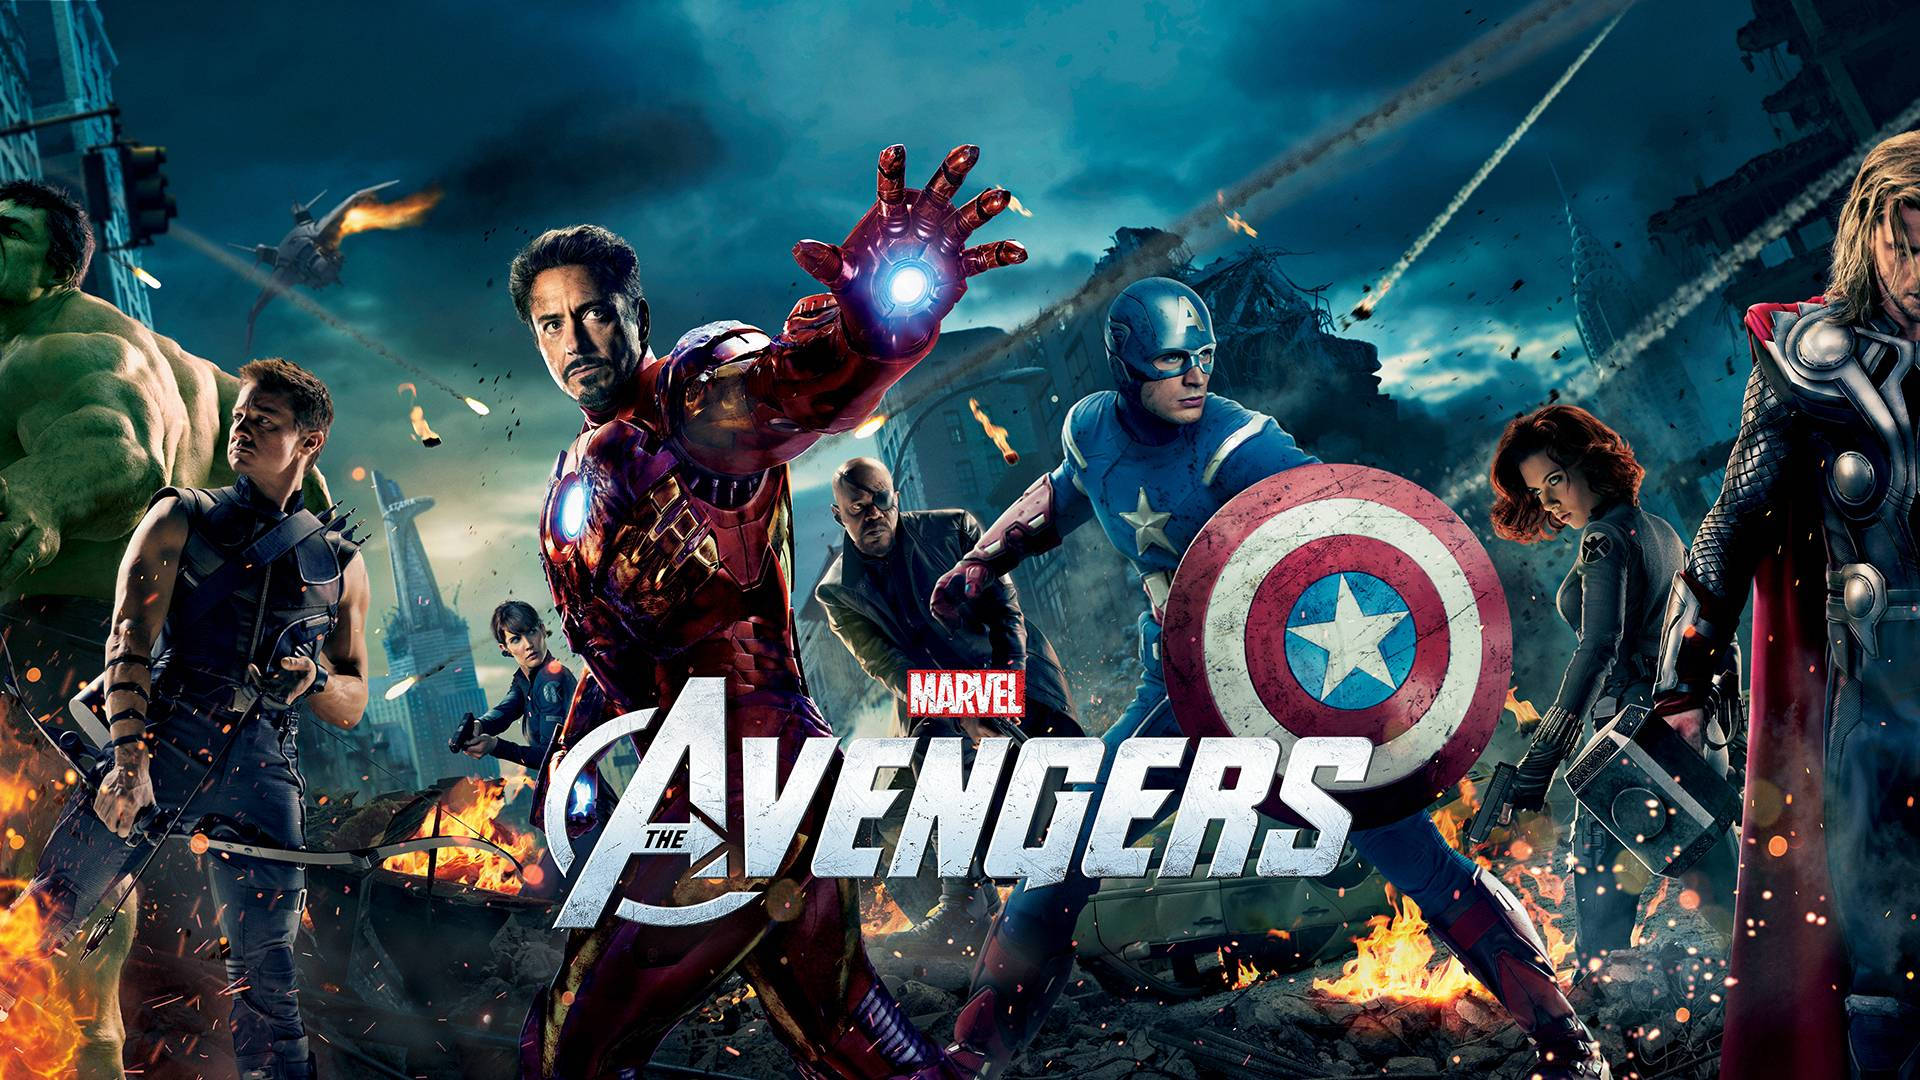 Deursprungliga Superhjältarna - The Avengers. Wallpaper